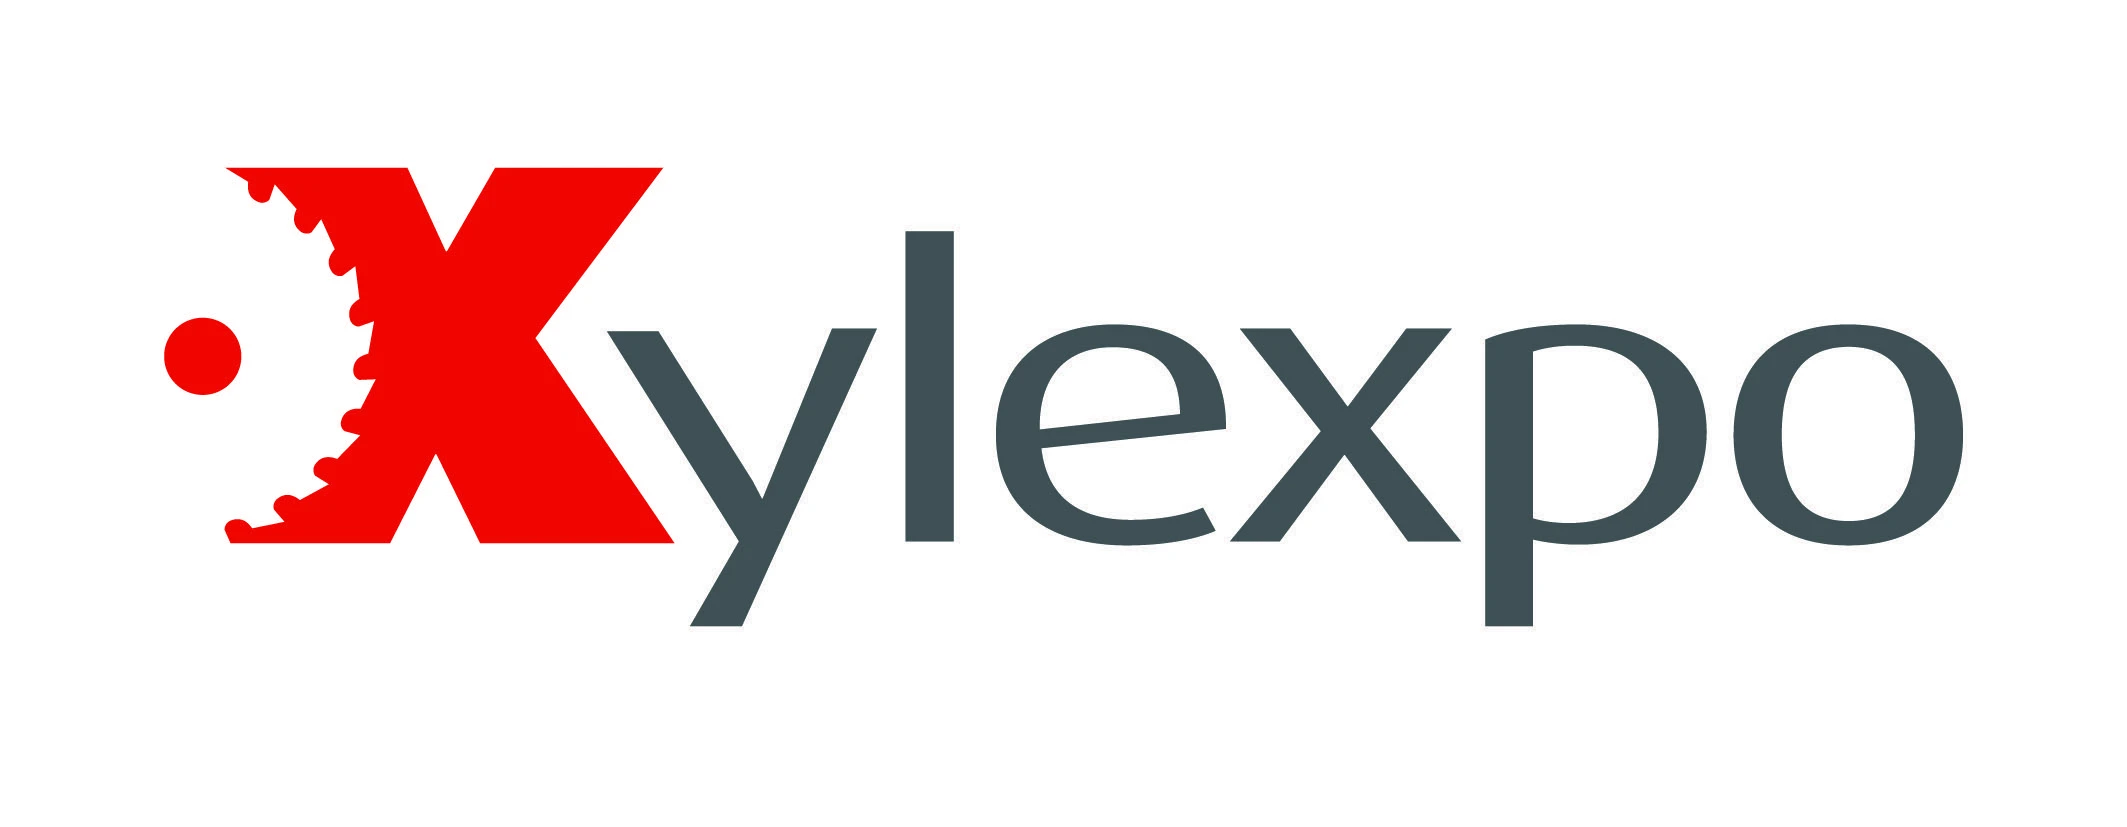 Xylexpo 2020 si rinnova: quattro giorni di fiera e nuovo logo